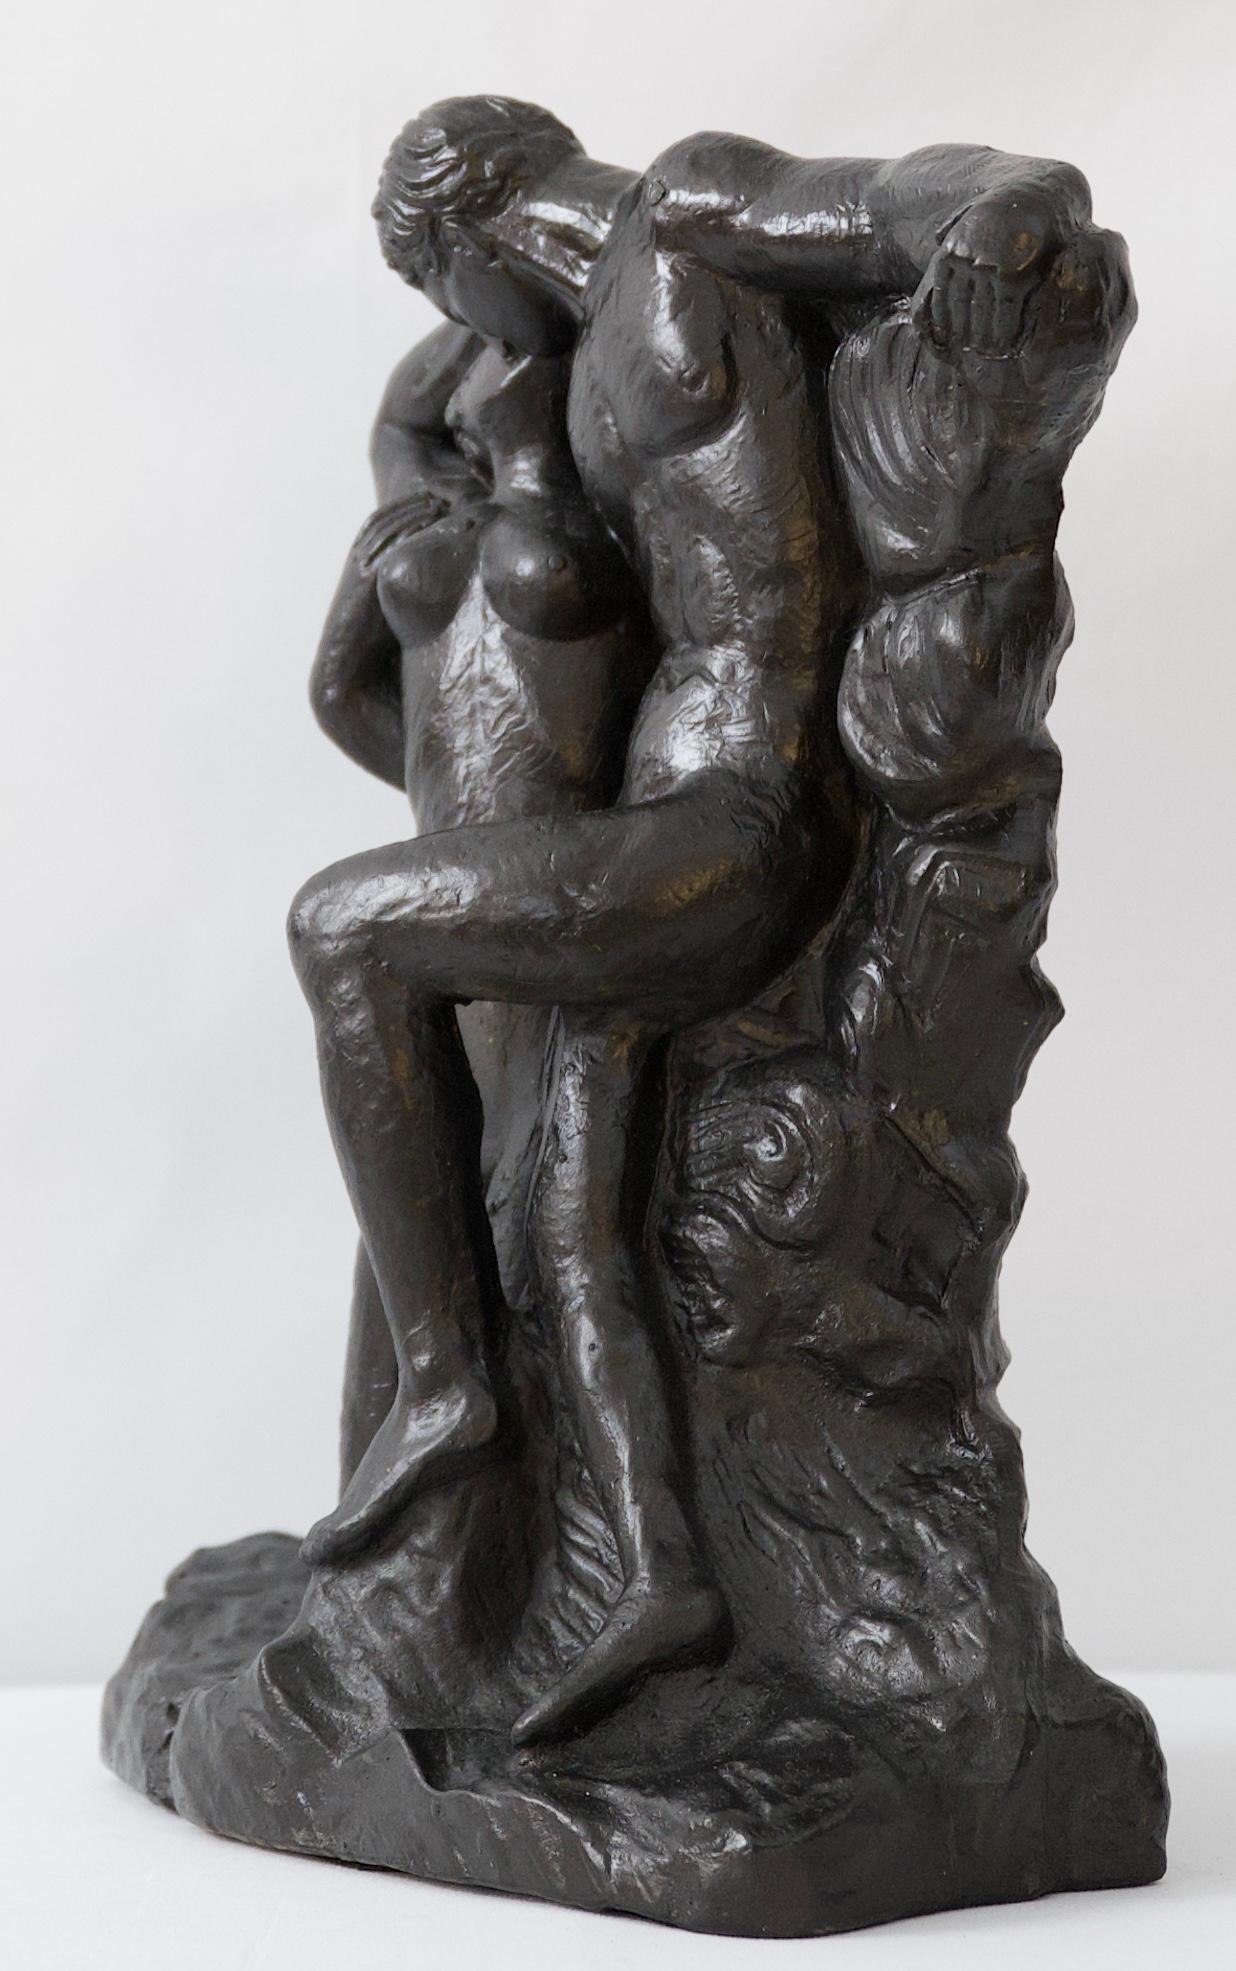 Eine auffällige figurative Skulptur eines sich küssenden Paares im Stil von Henry Moore. 

Dieses Stück ist aus handgegossenem und handbearbeitetem Durastone gefertigt, einer speziellen Mischung aus Schotter und Schlamm. Er hat eine schöne,